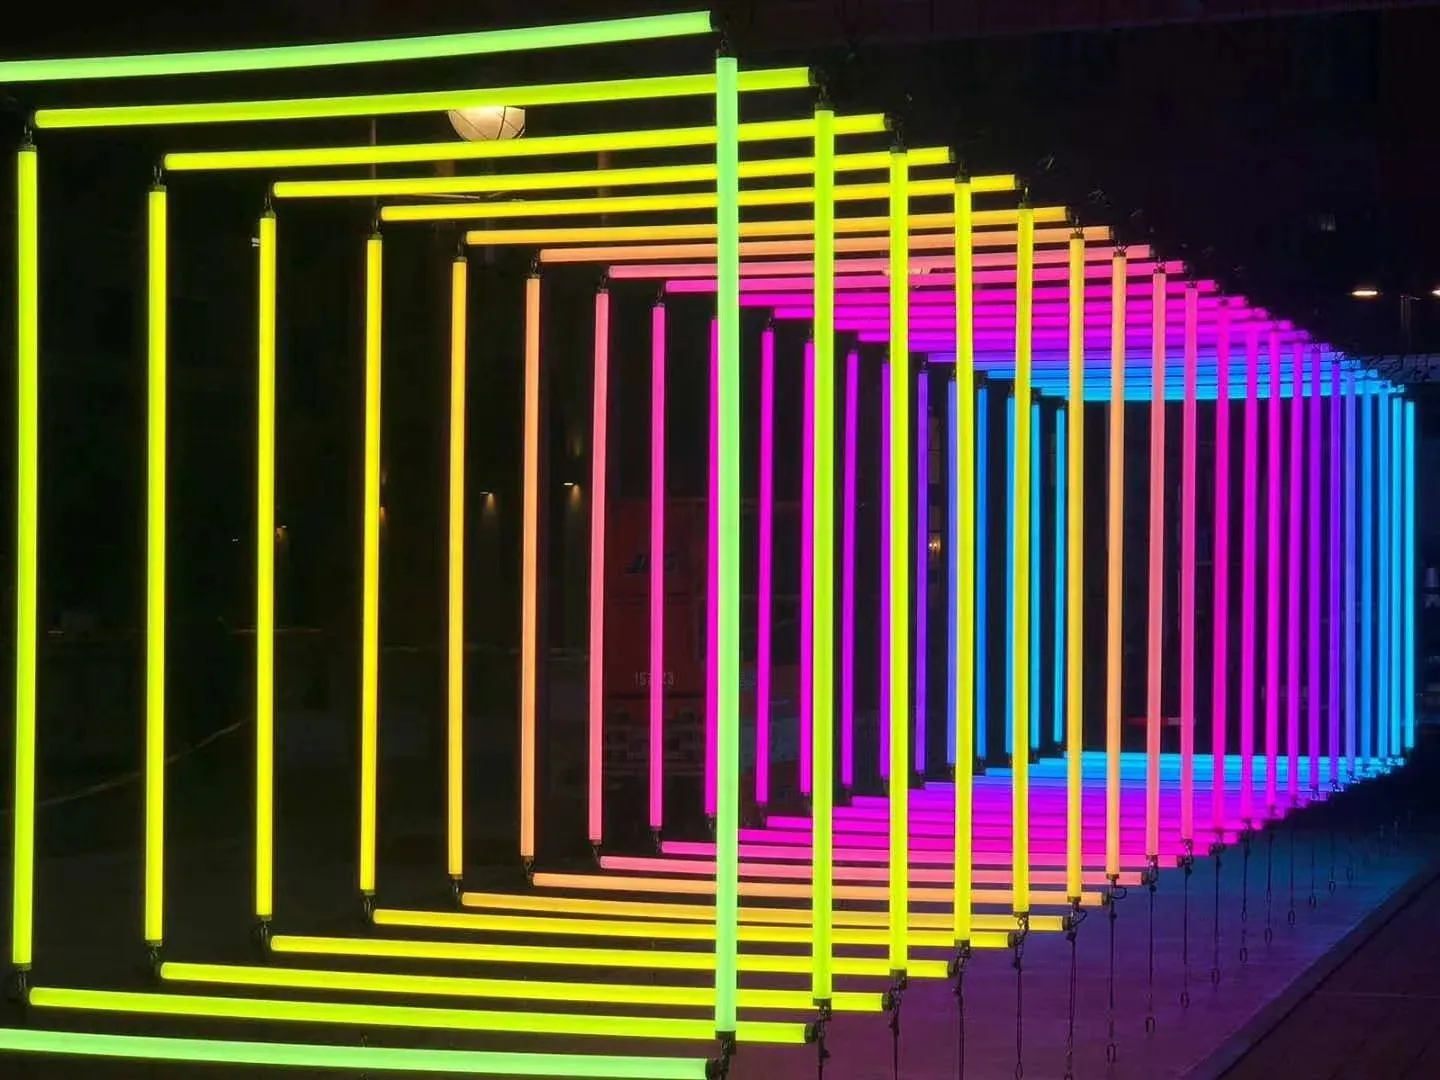 1 м UCS1903 360 градусов цветная RGB трубка, светодиодная Пиксельная Панель 3D, Фотоэлементы разной формы для клубных сценических мероприятий от AliExpress RU&CIS NEW